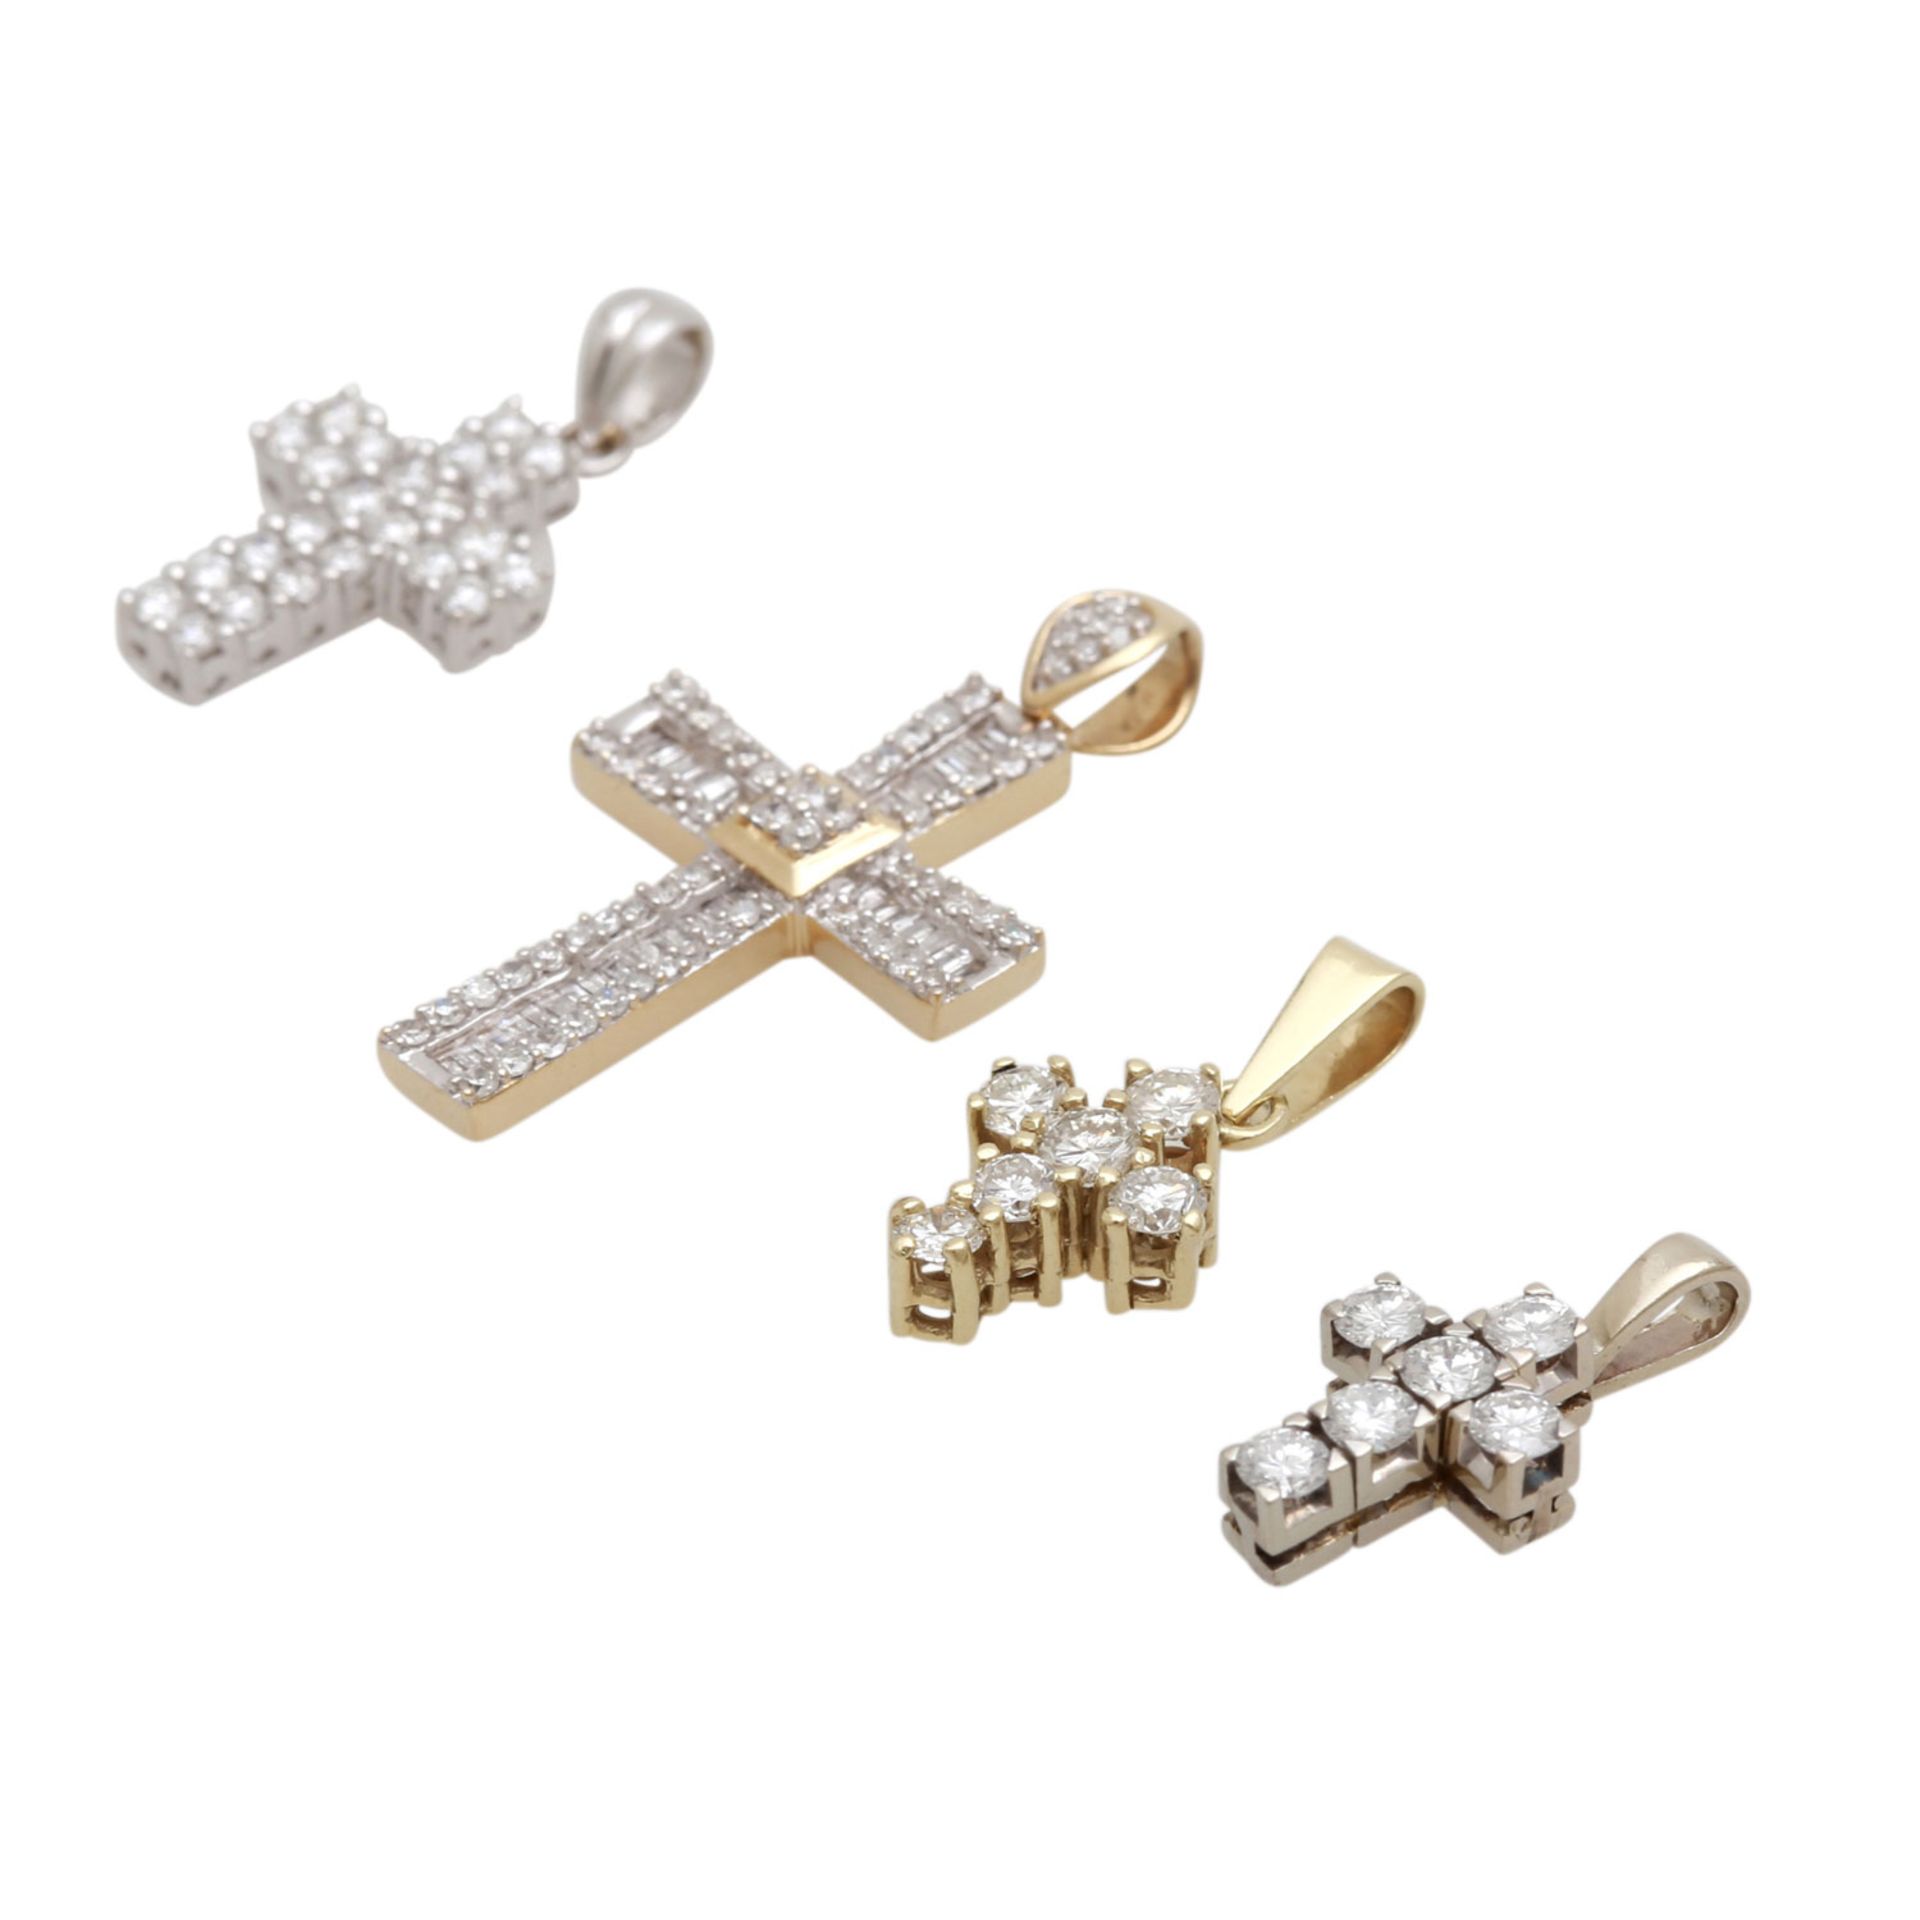 4 Kreuzanhänger mit Diamantbesatz davon 1 mittleres Kreuz in WG 18K mit 24 Brillanten zus. ca. 0,7